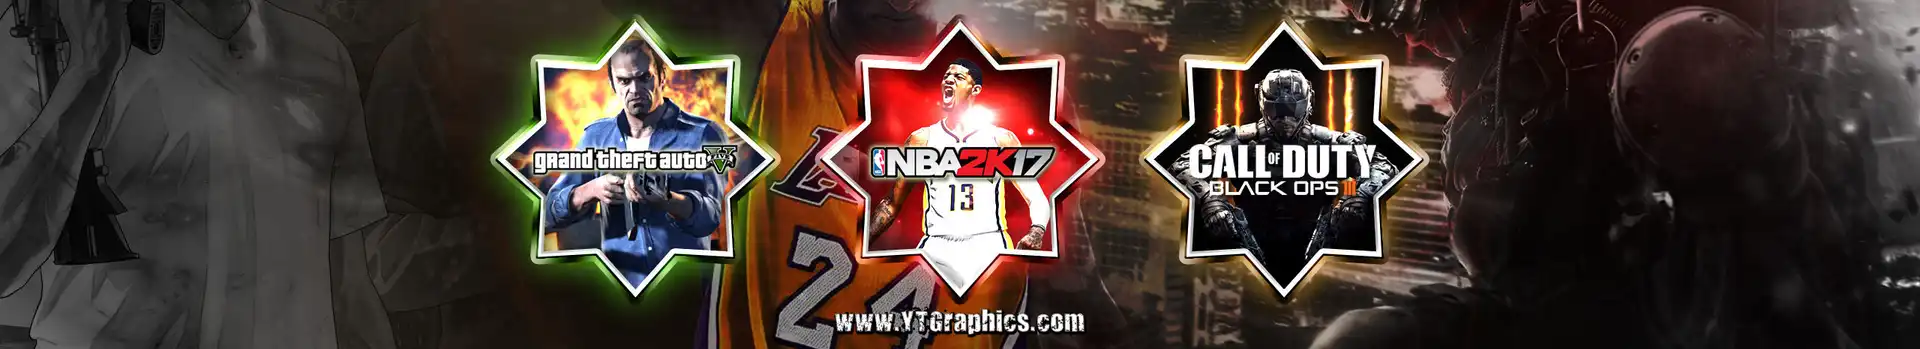 Mix: GTA V, NBA2K17, BO3 preview